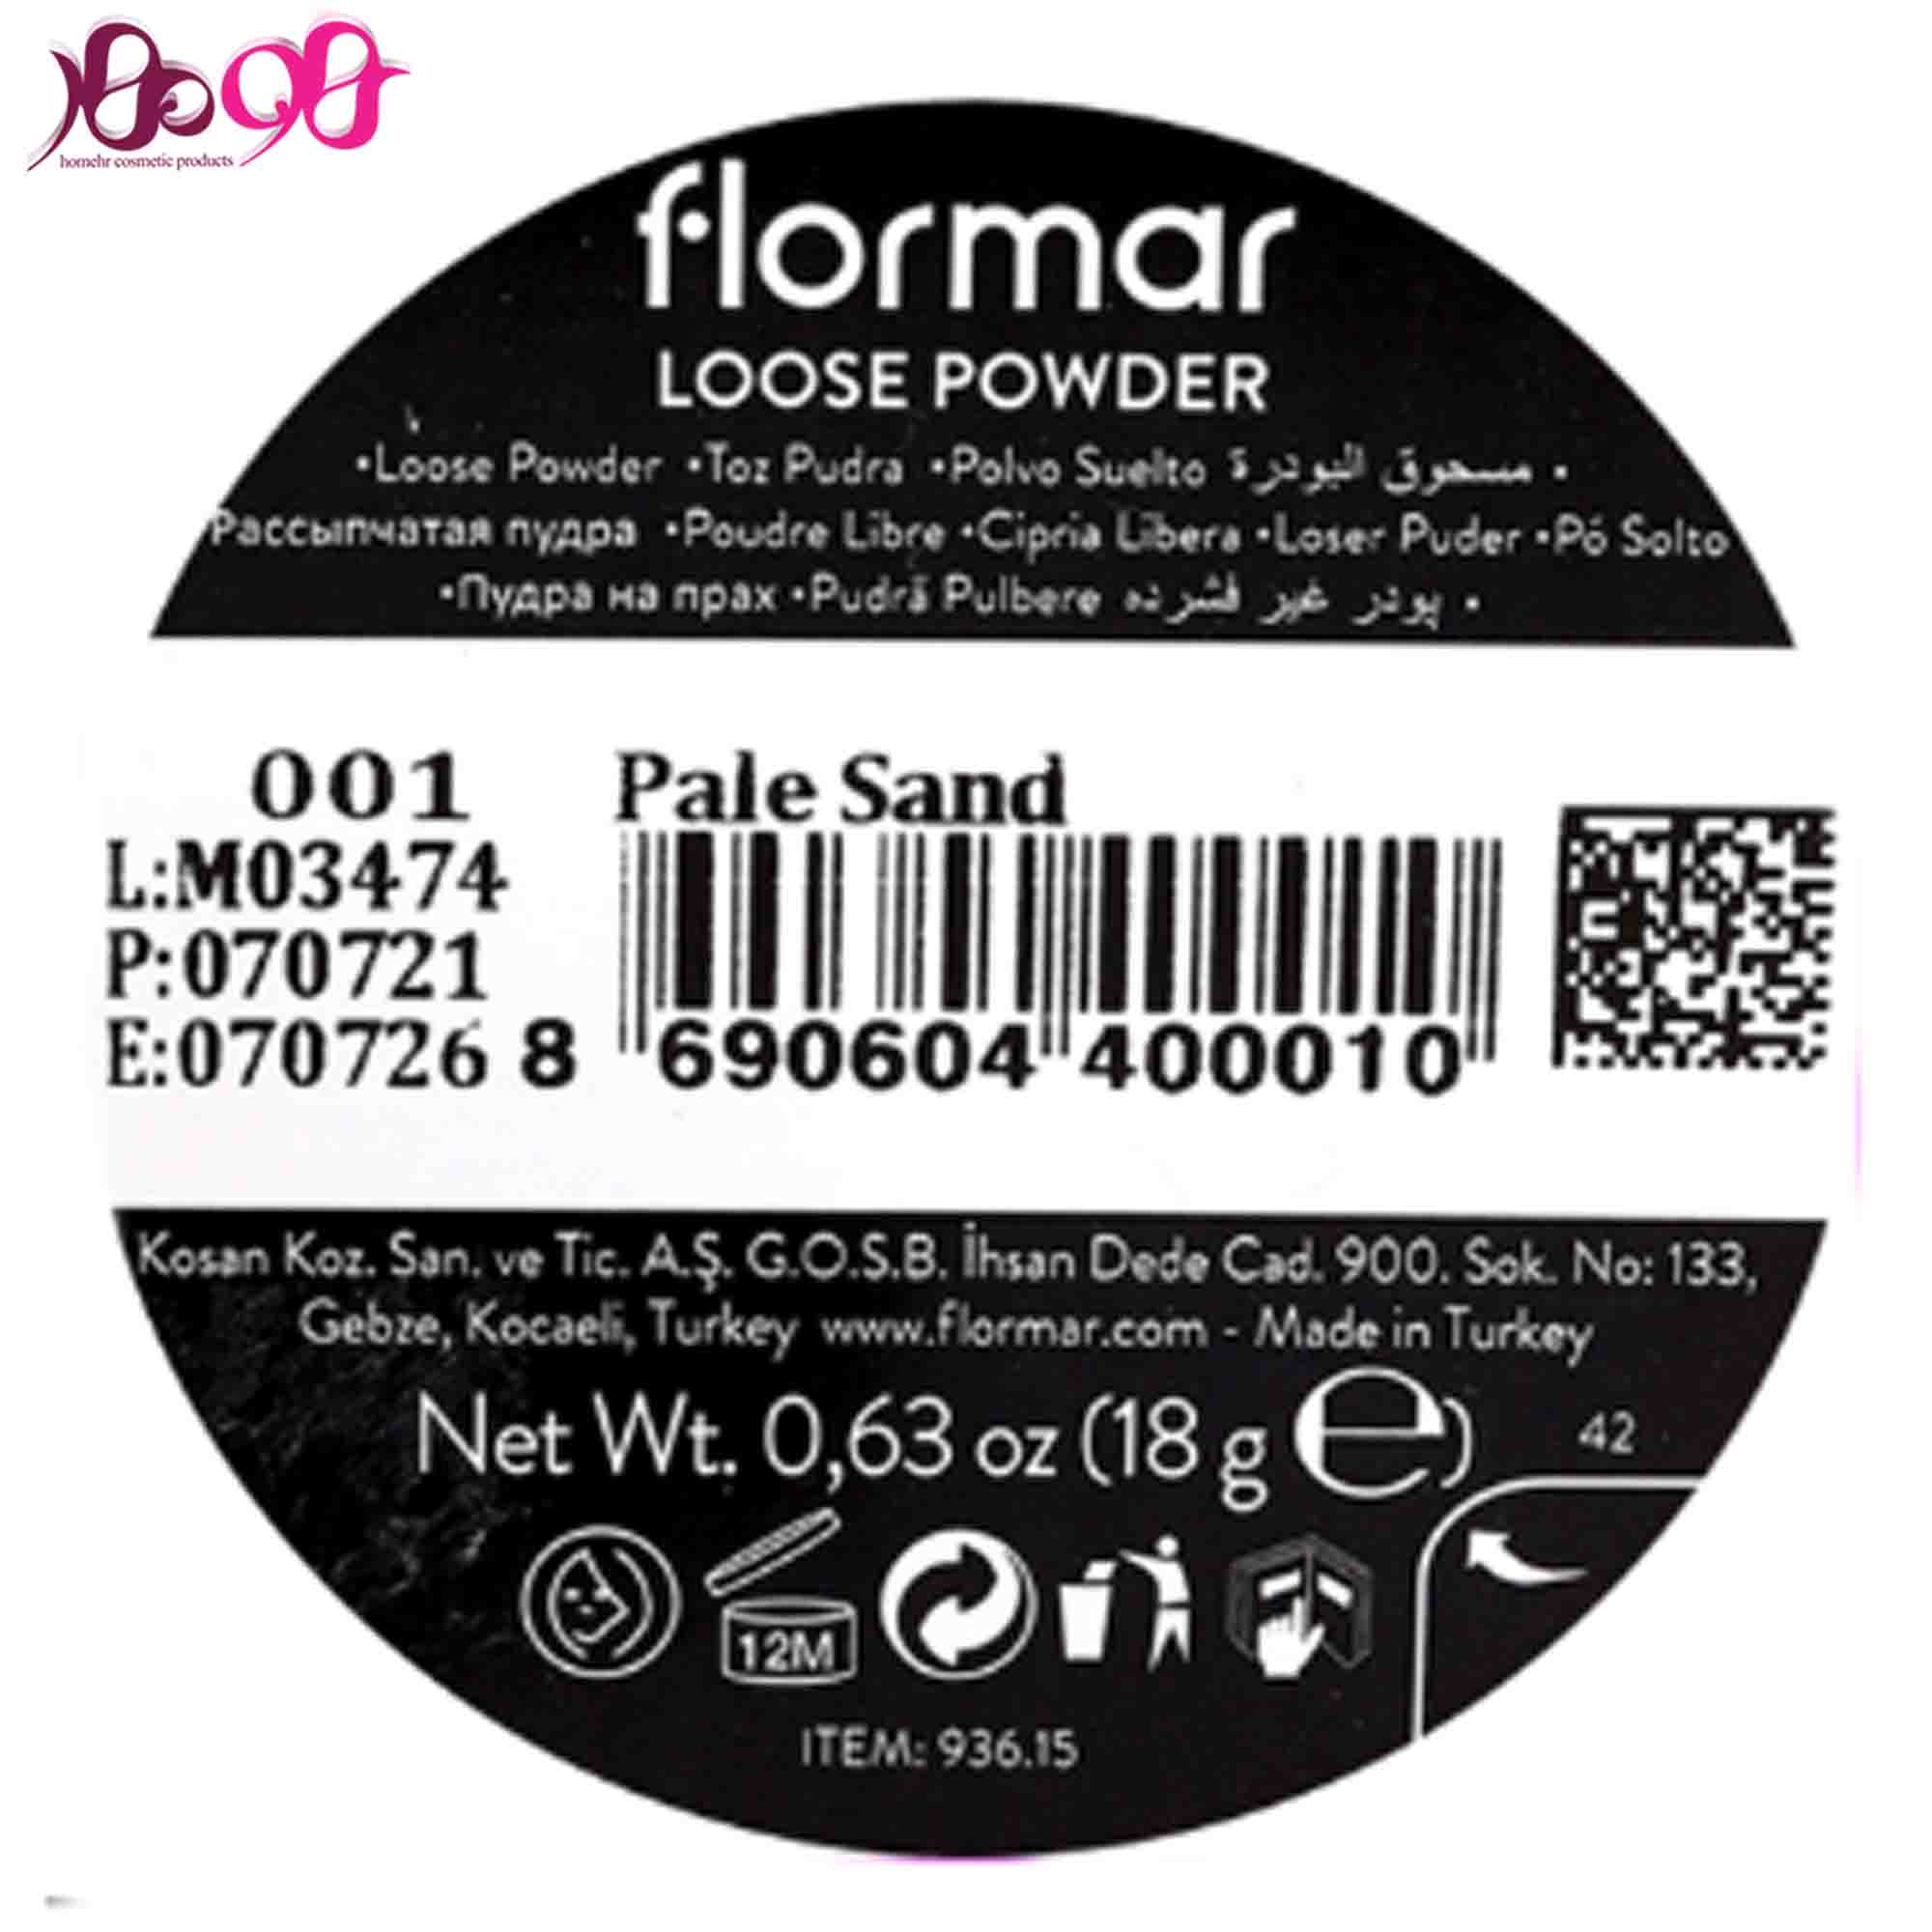 پودر-فيکس-001-روشن-فلورمار-18-گرم-loose-powder-pale-sand-flormar